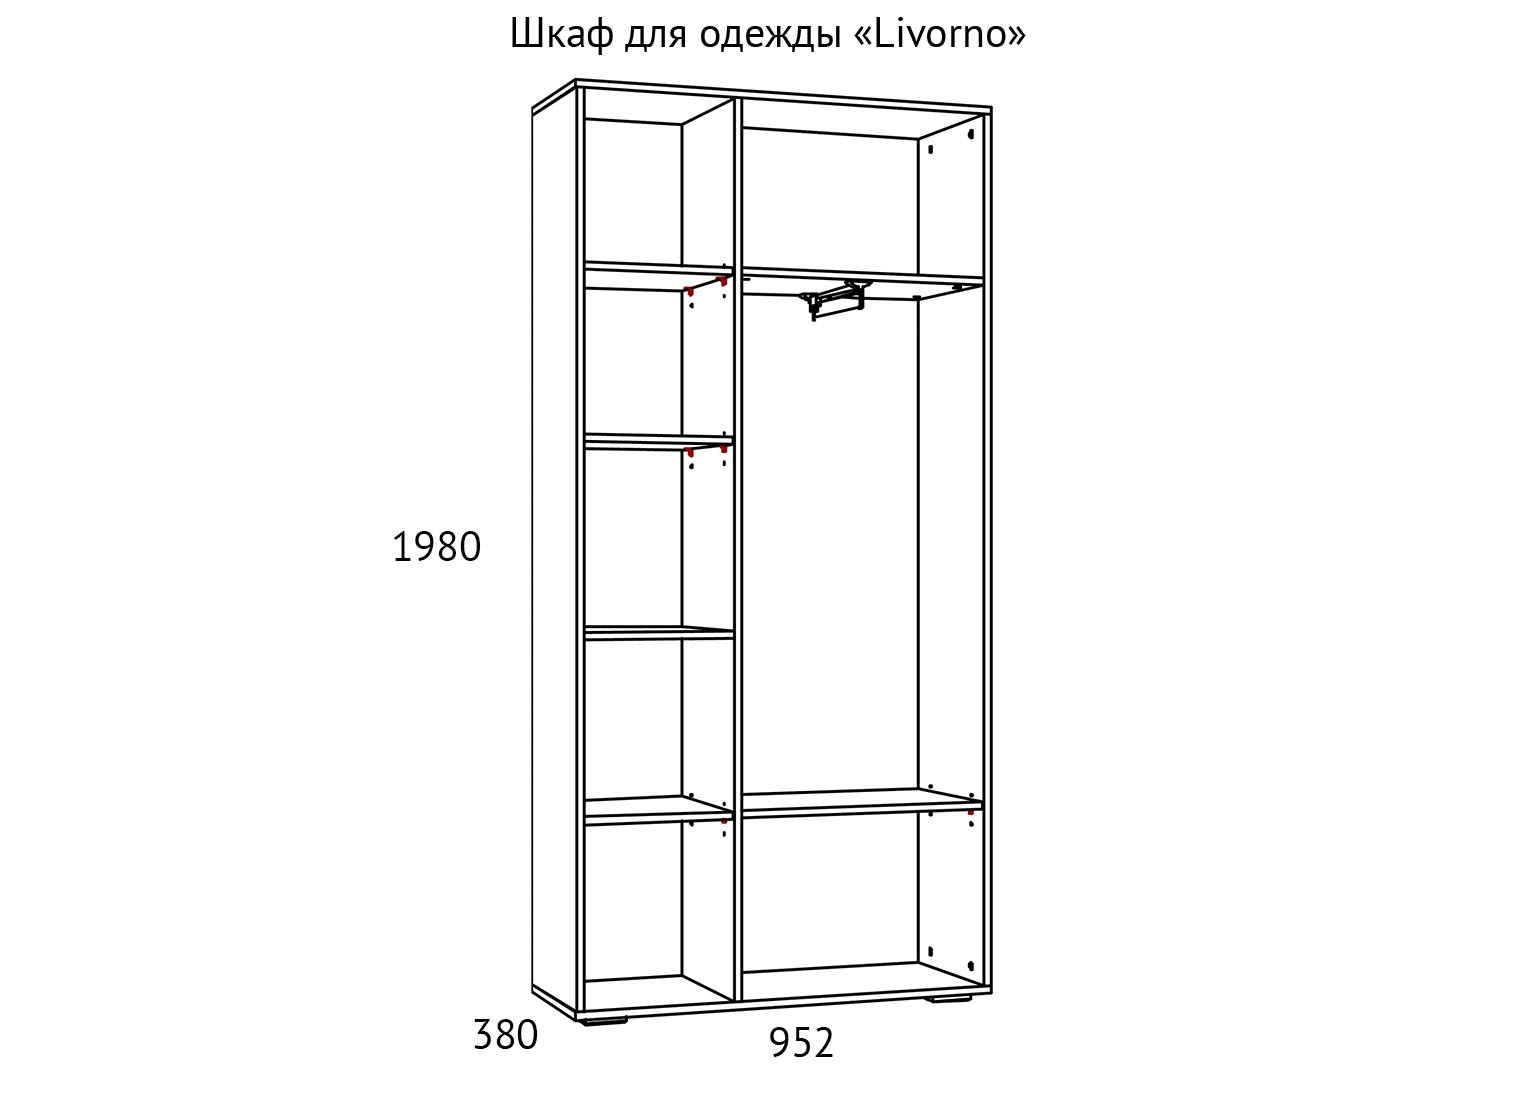 НМ 013.36 Шкаф для одежды Livorno схема Мебель Краснодар